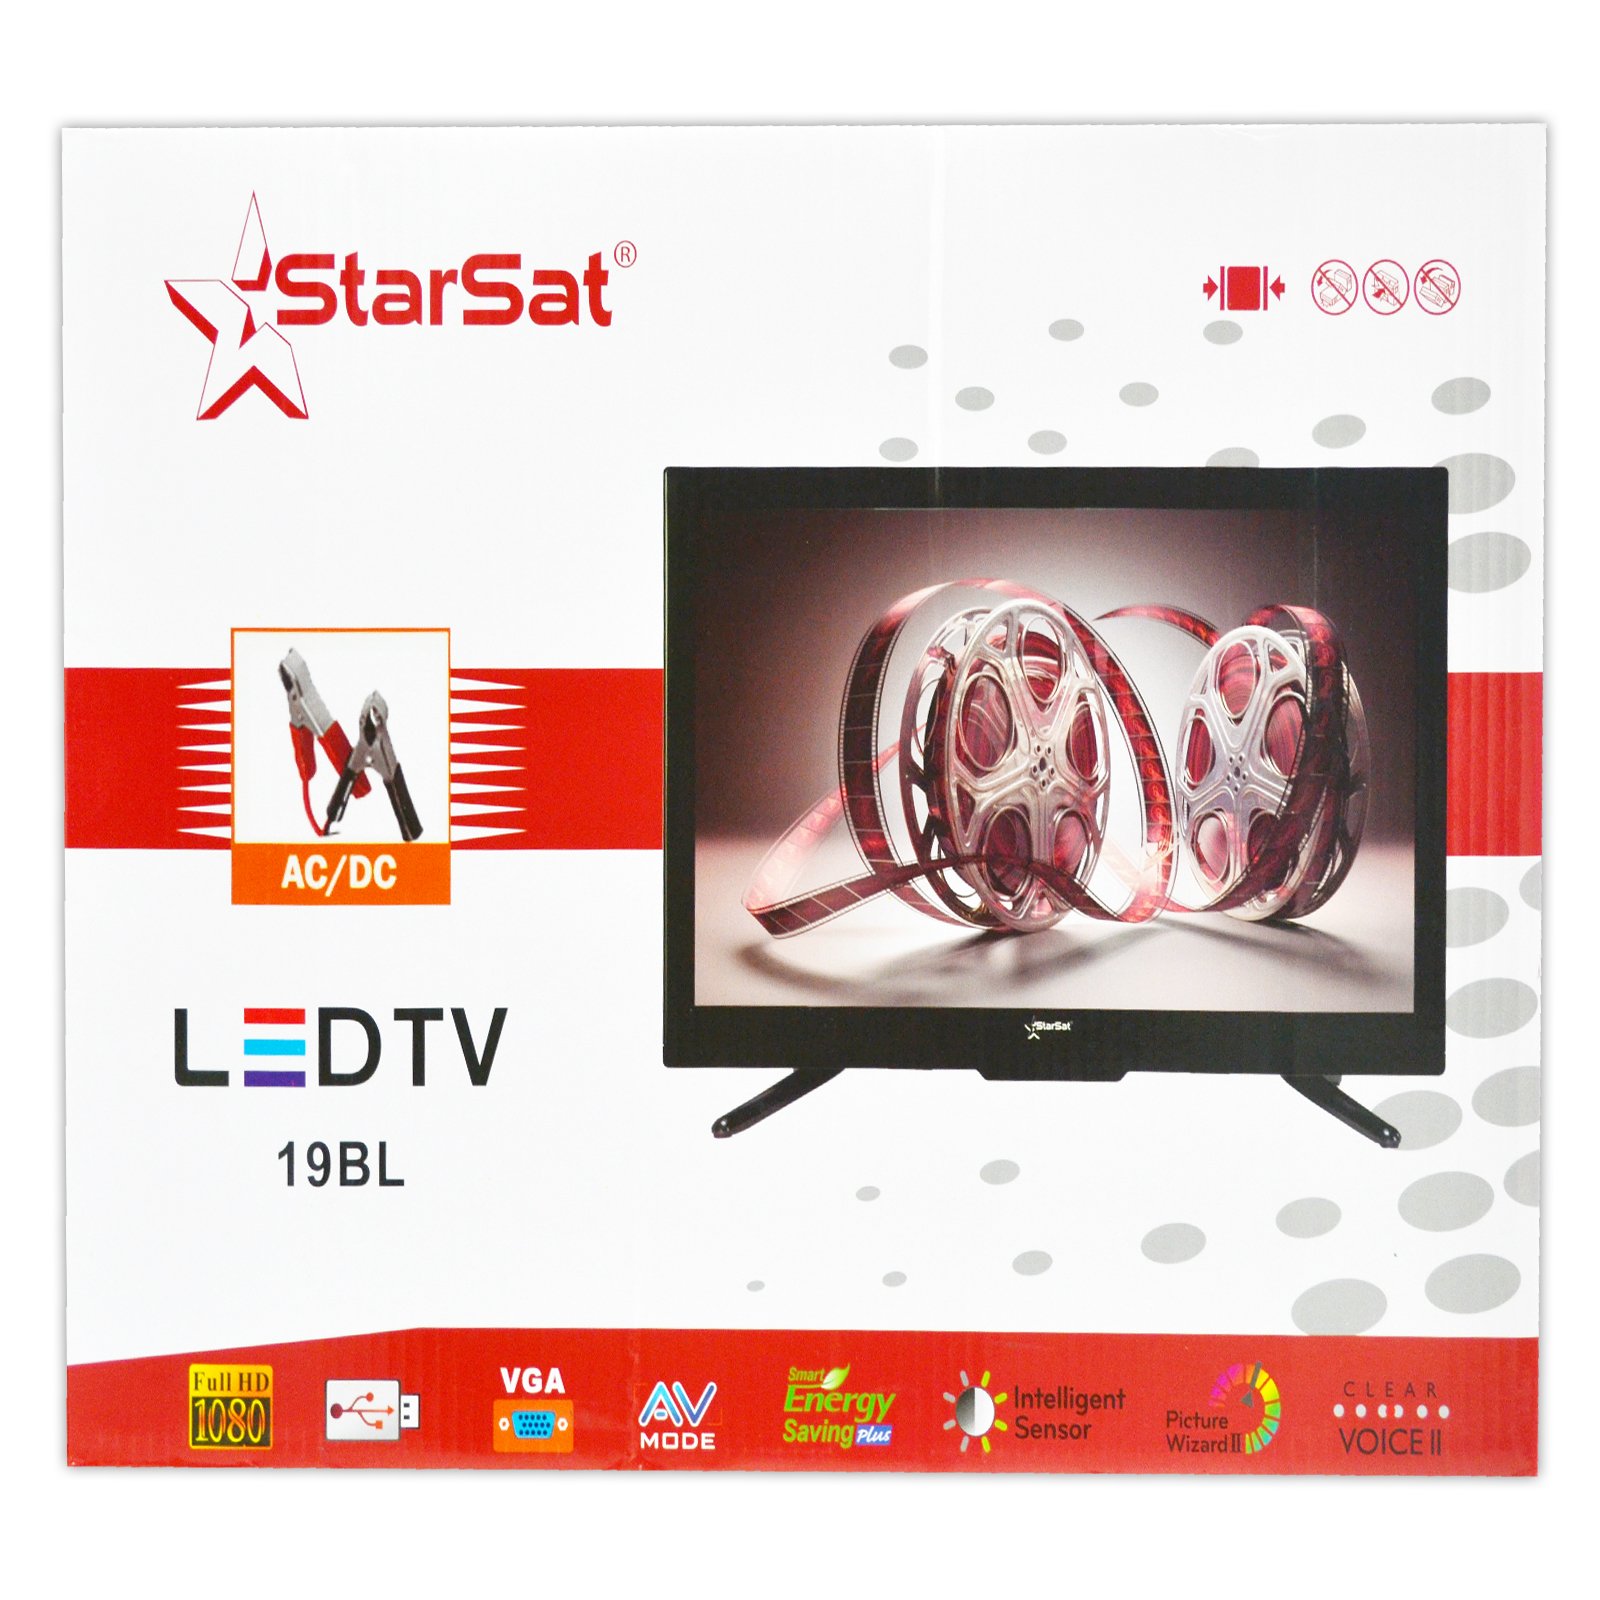 StarSat 19" HD LED TV, AC/DC, Slim bezel design, HDMI, USB, AV and PC mode